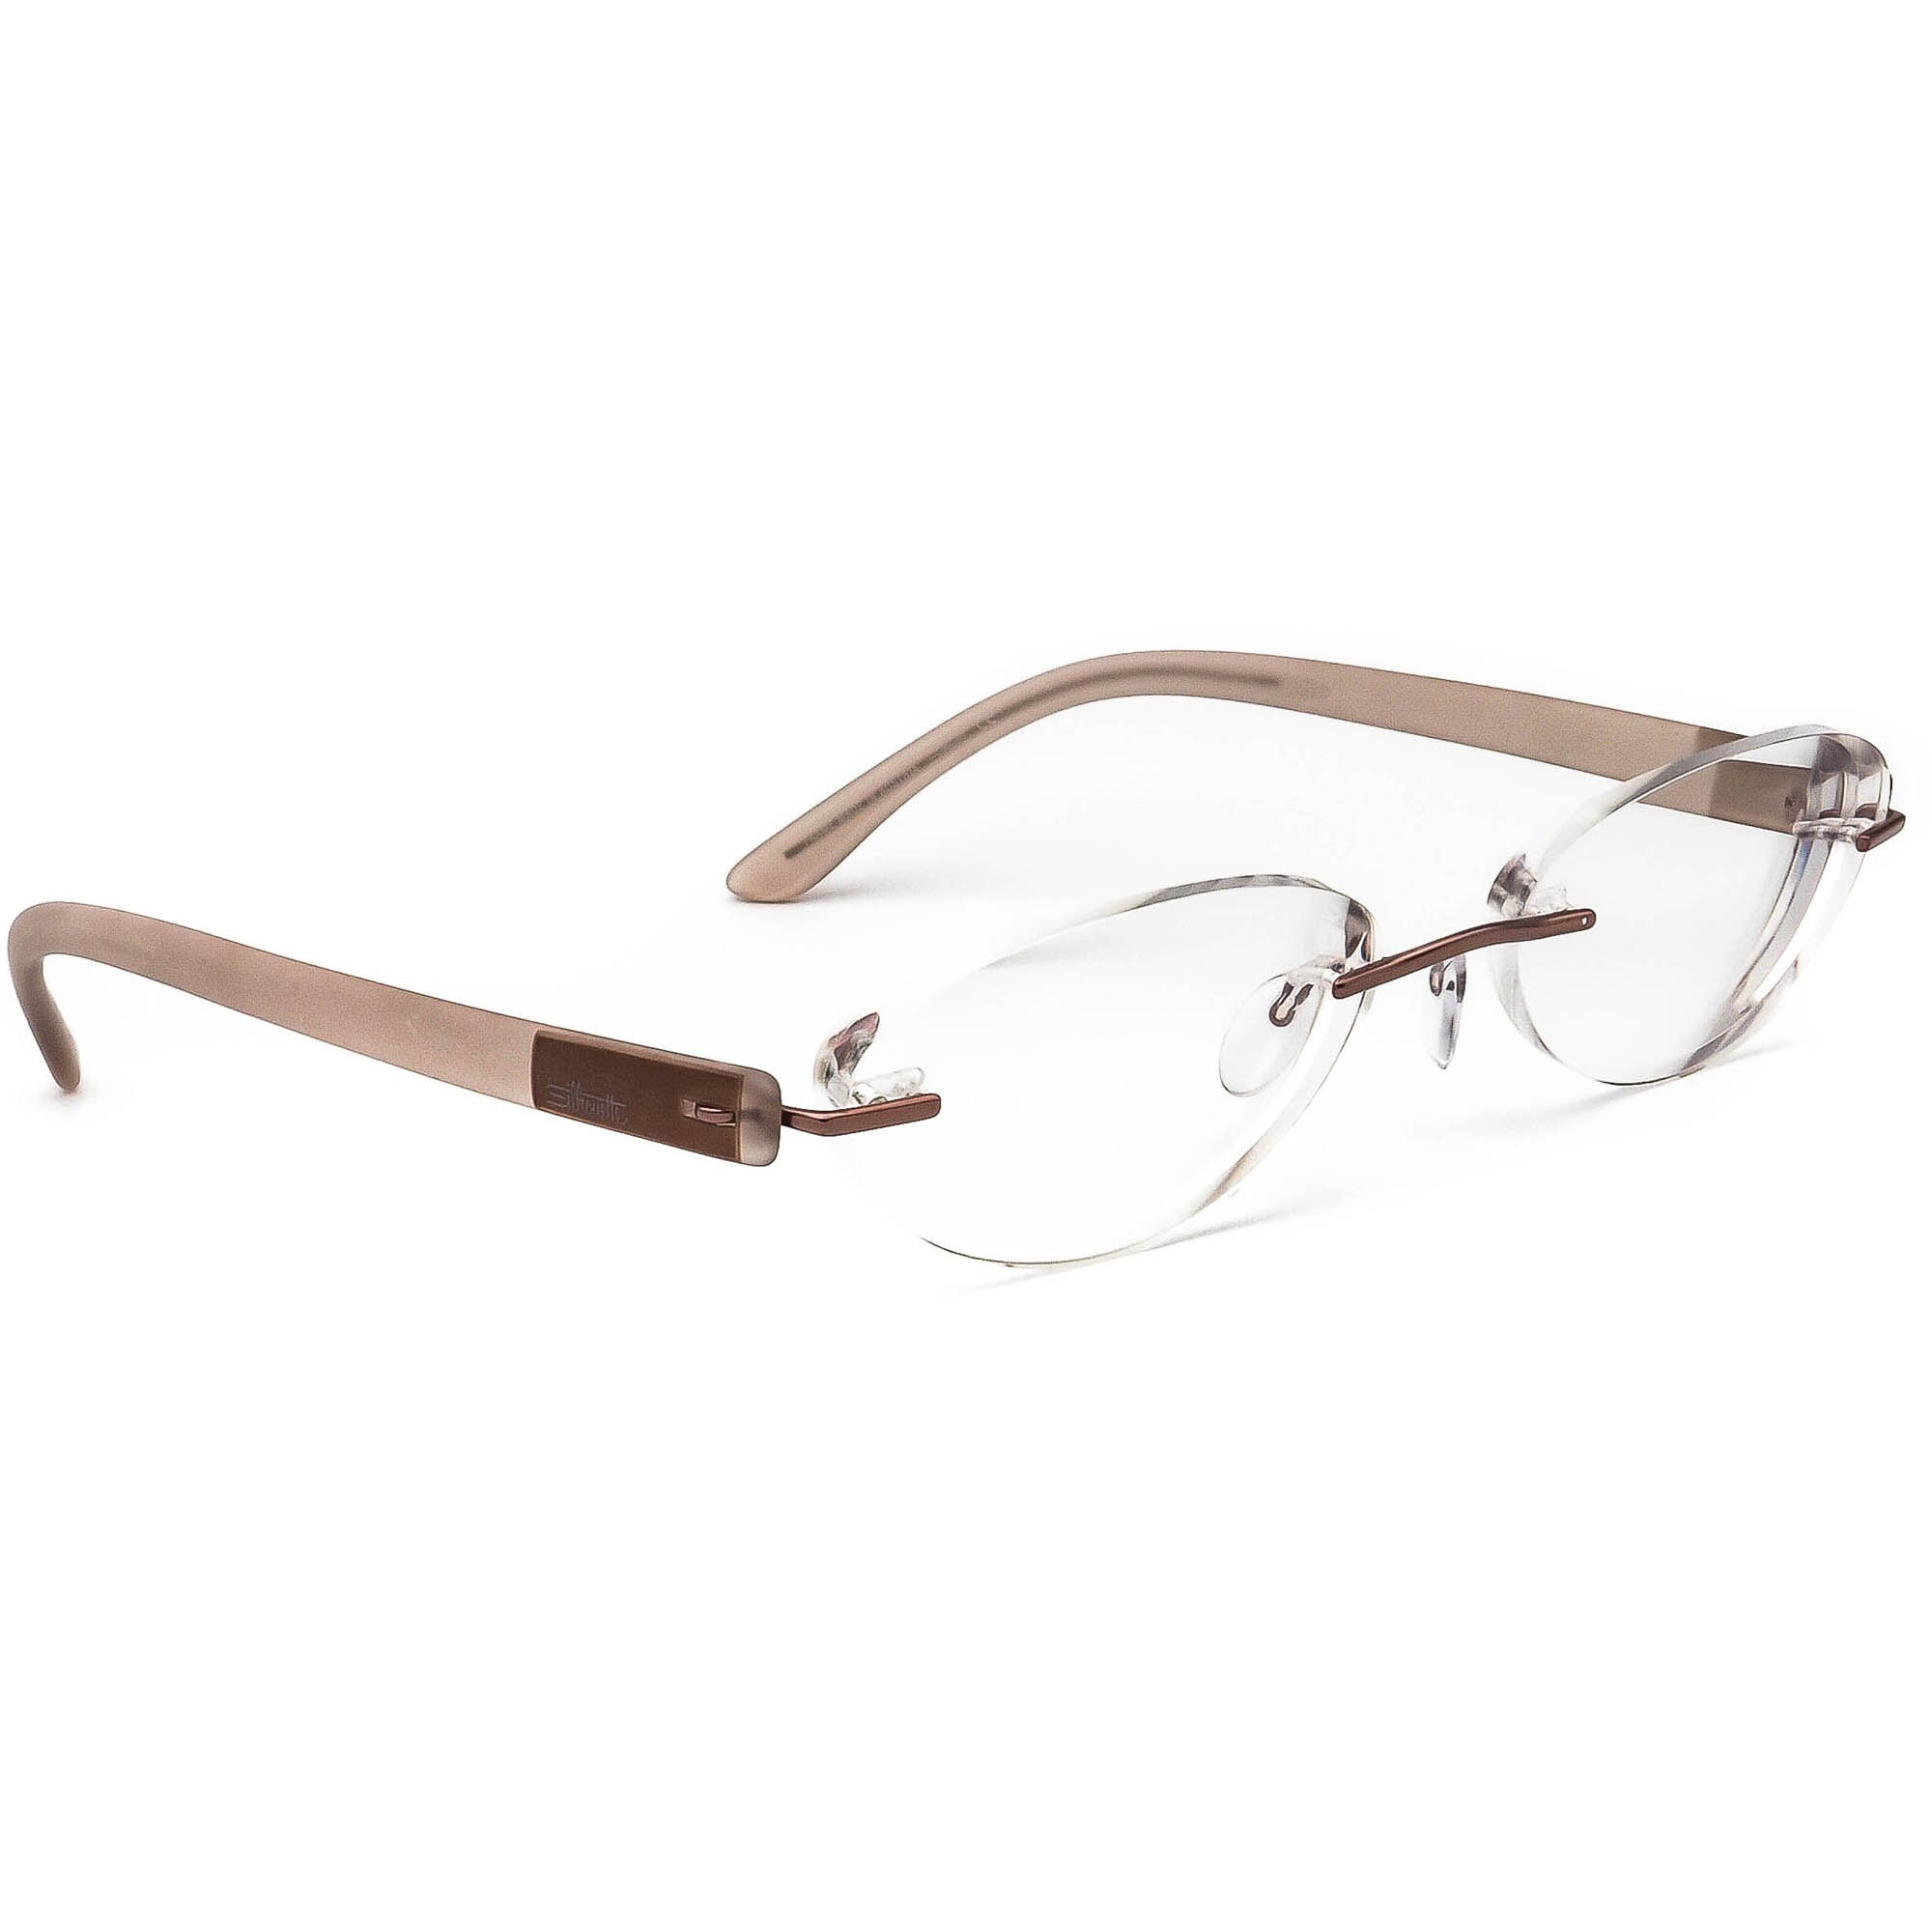 Silhouette Eyeglasses 7608 40 6057 Light Brown Rimless Frame - Etsy Finland